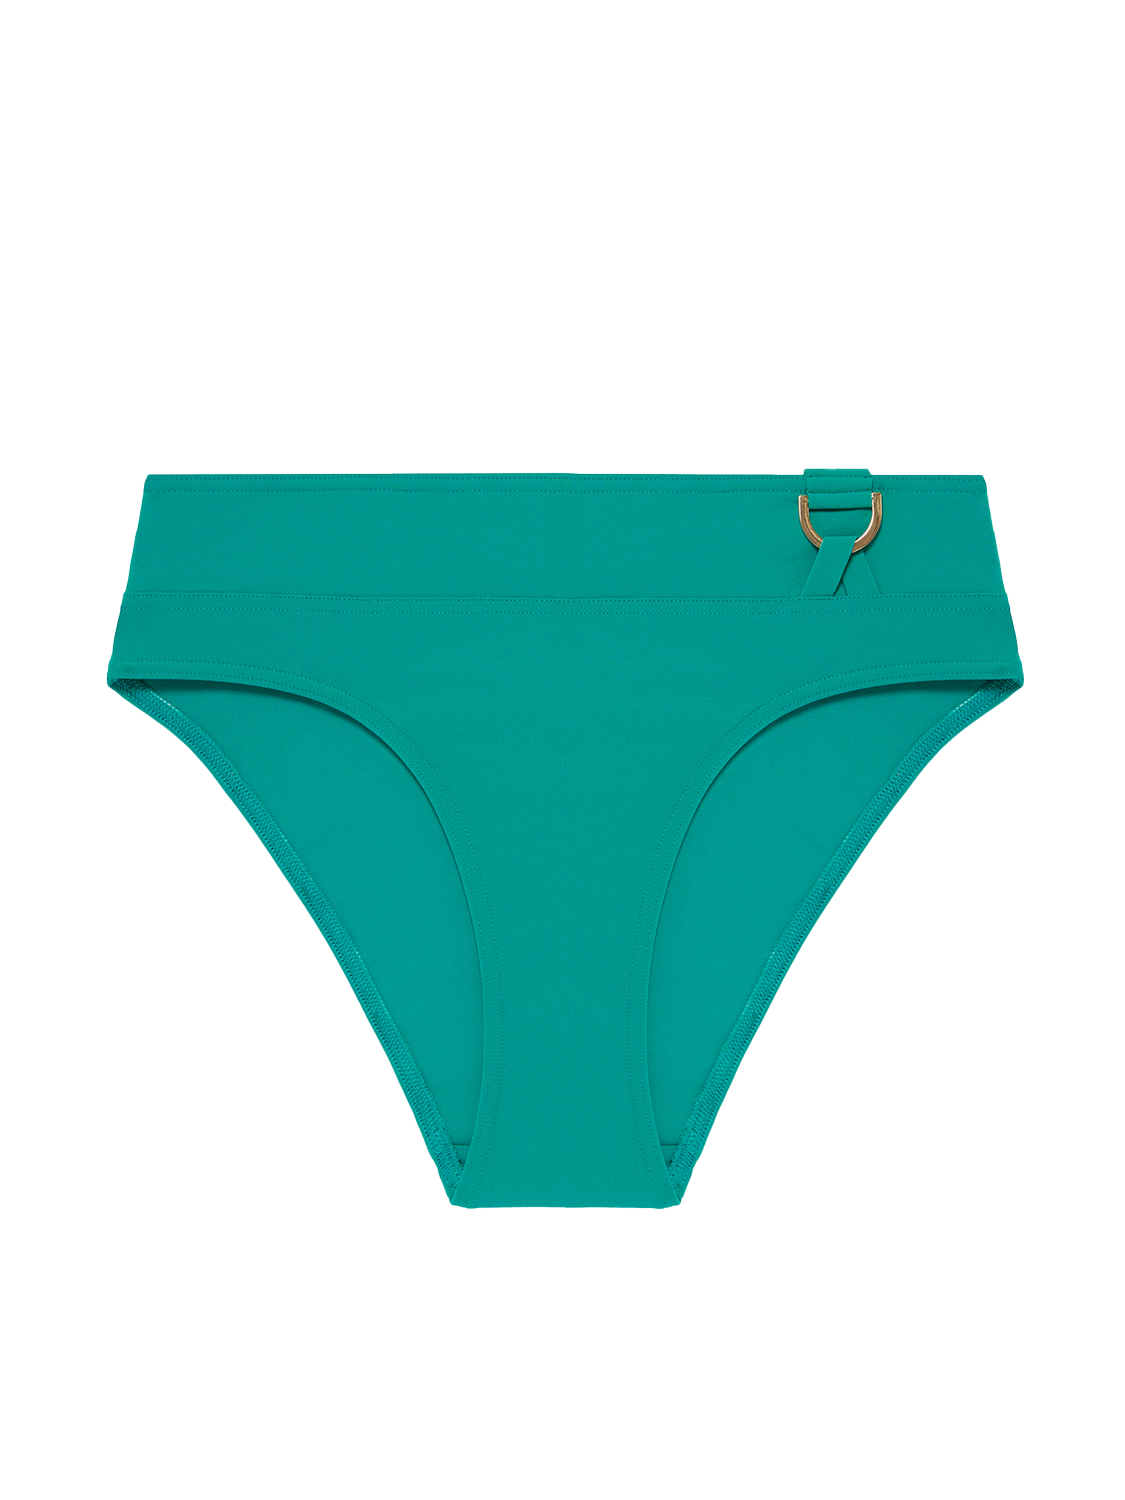 High-waist bikini brief - Waterfall Green